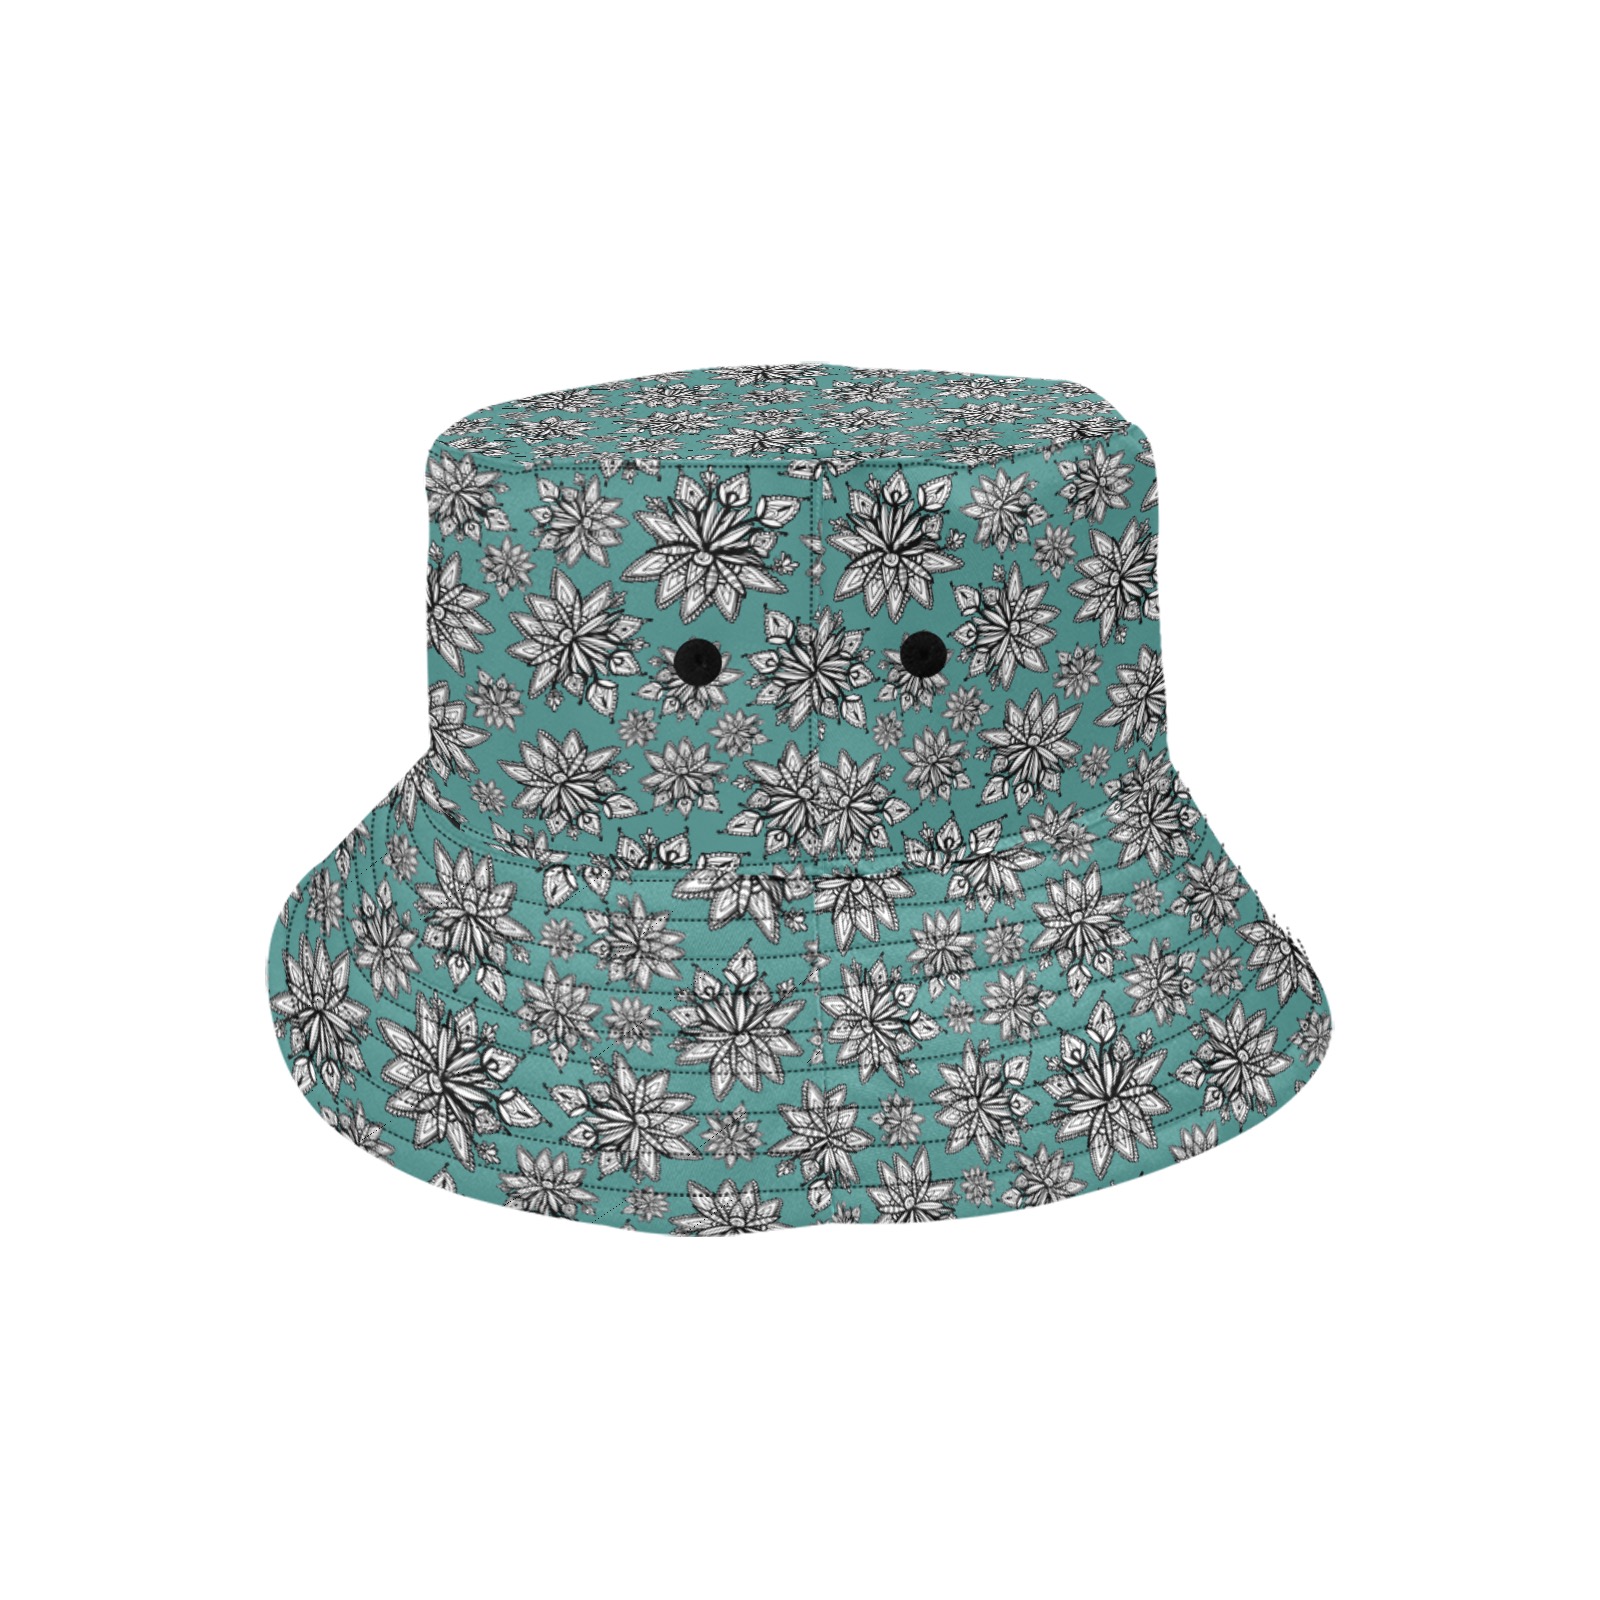 Creekside Floret - teal Unisex Summer Bucket Hat